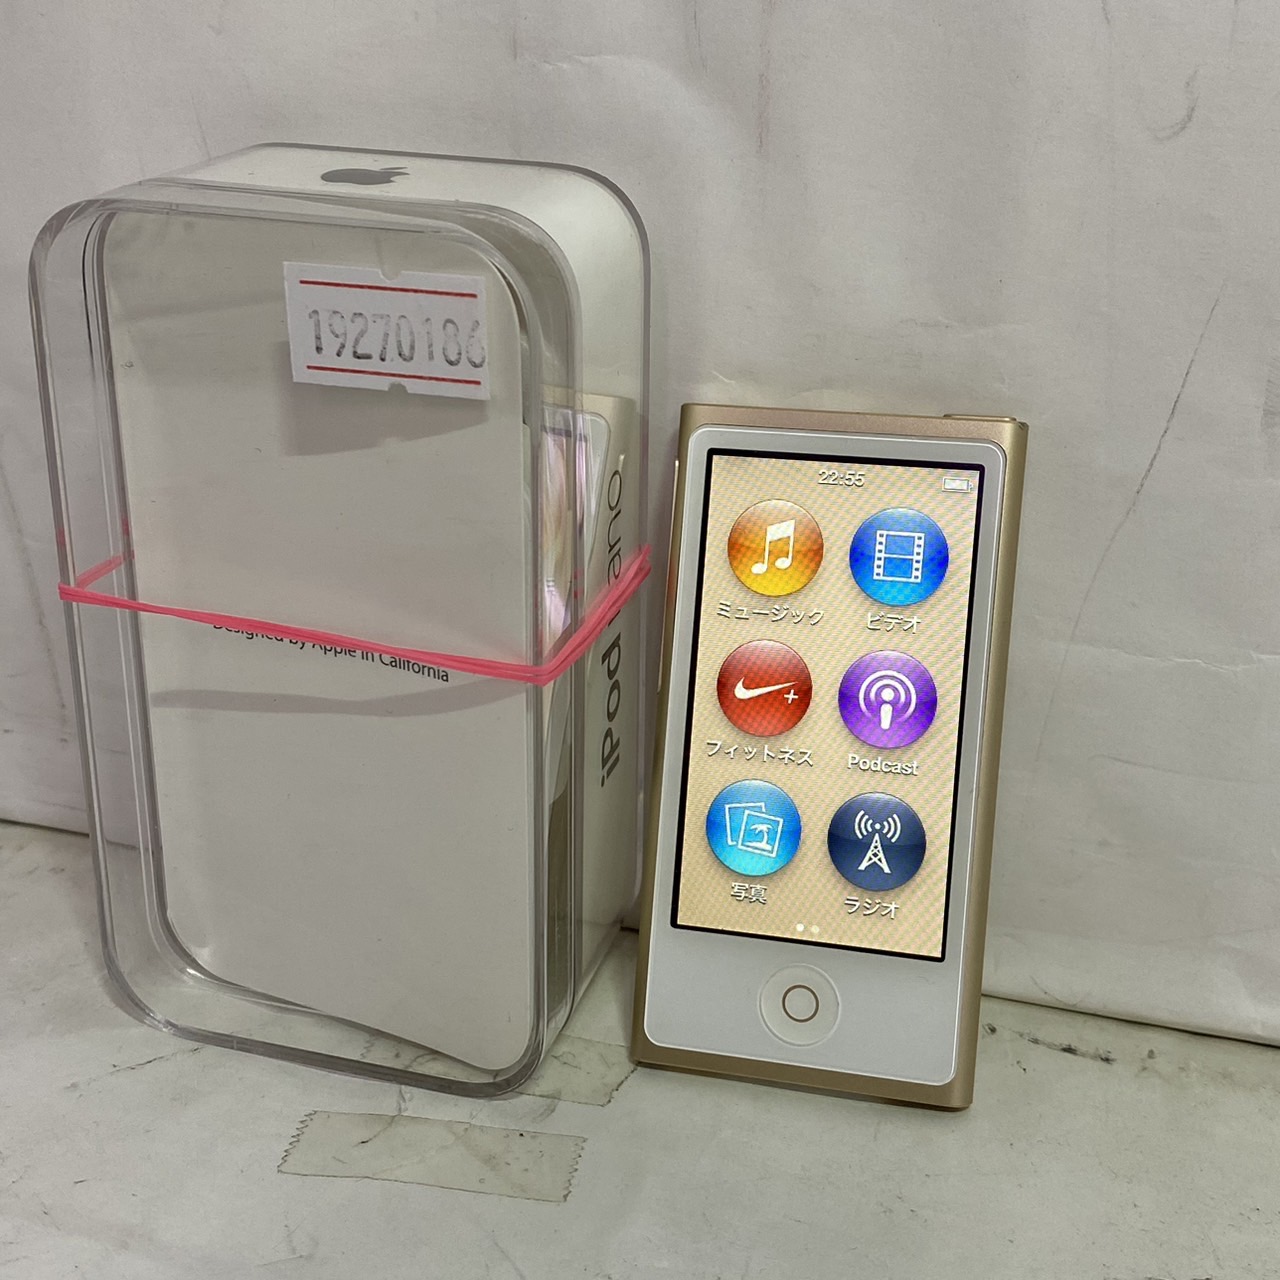 APPLE(アップル) iPod nano 第7世代 [16GB]の激安通販 - パソコン